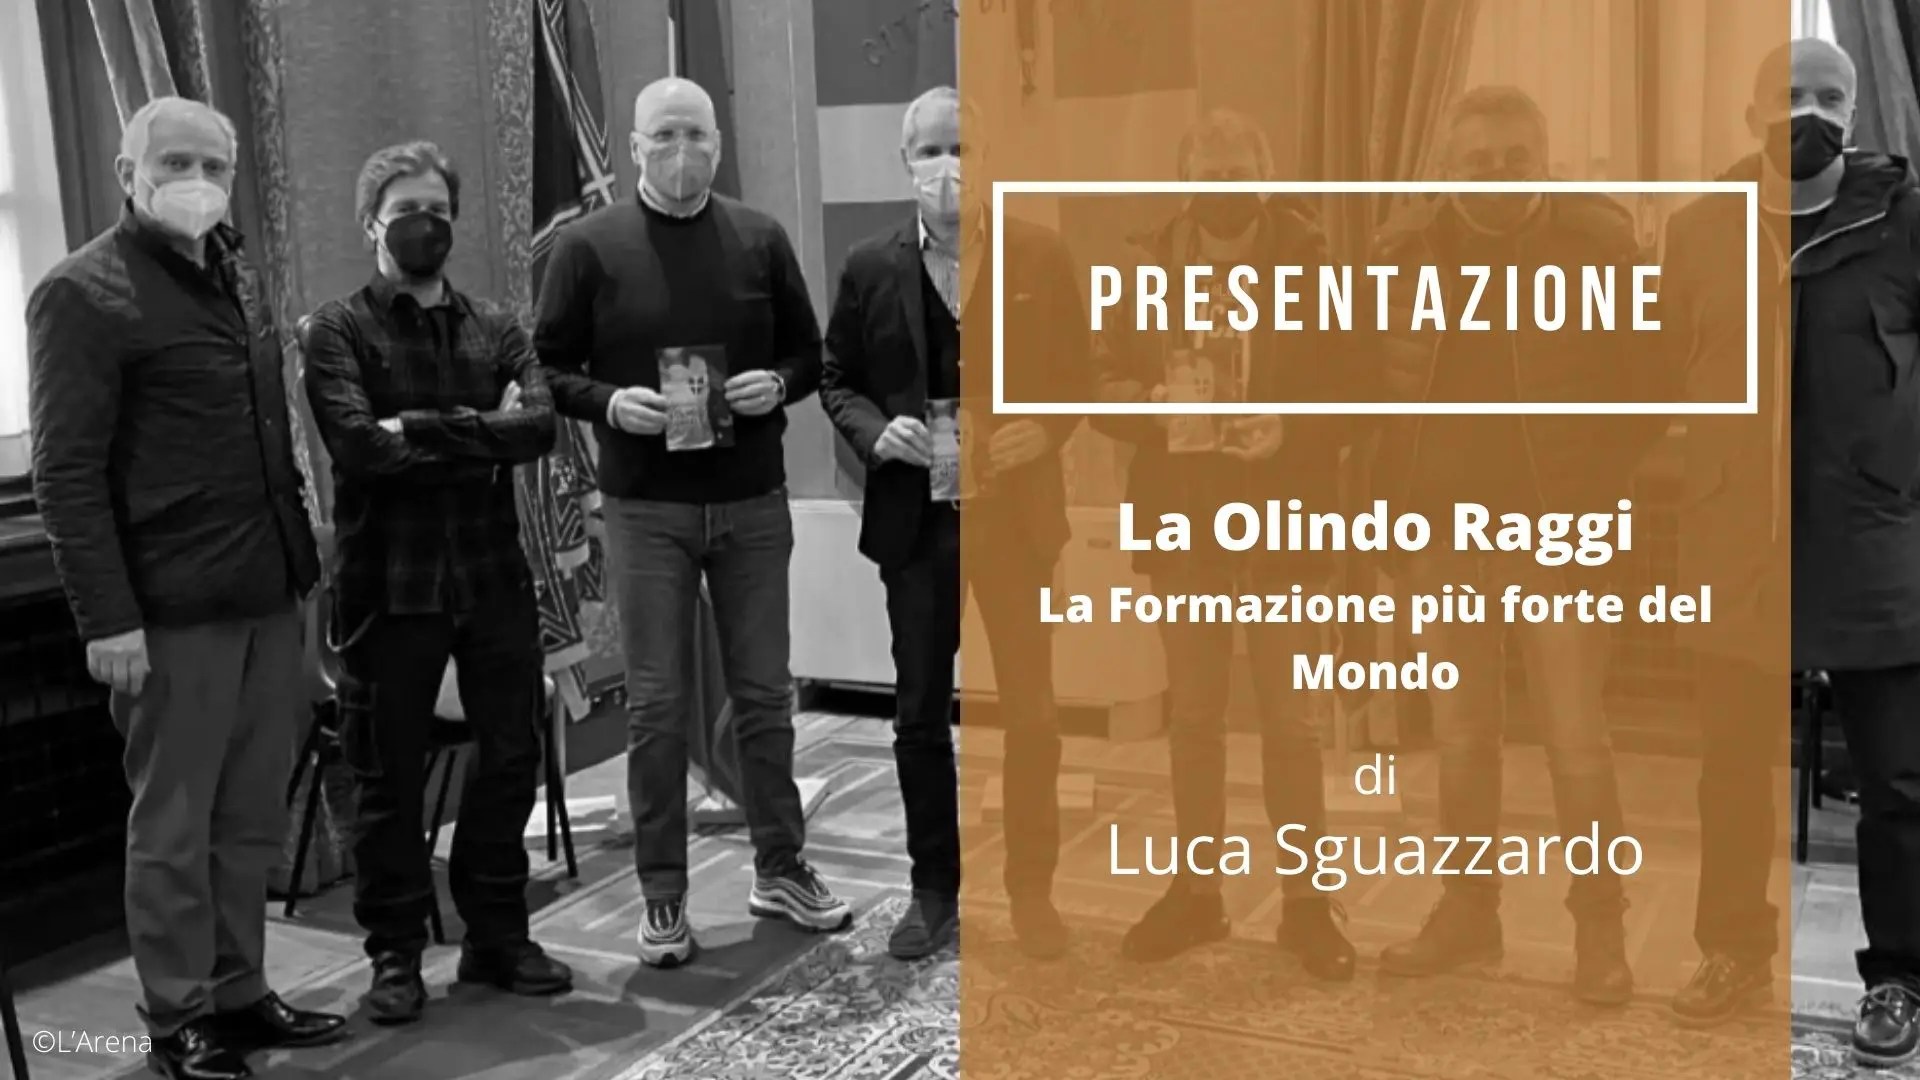 Presentazione del libro La Olindo Raggi di Luca Sguazzardo